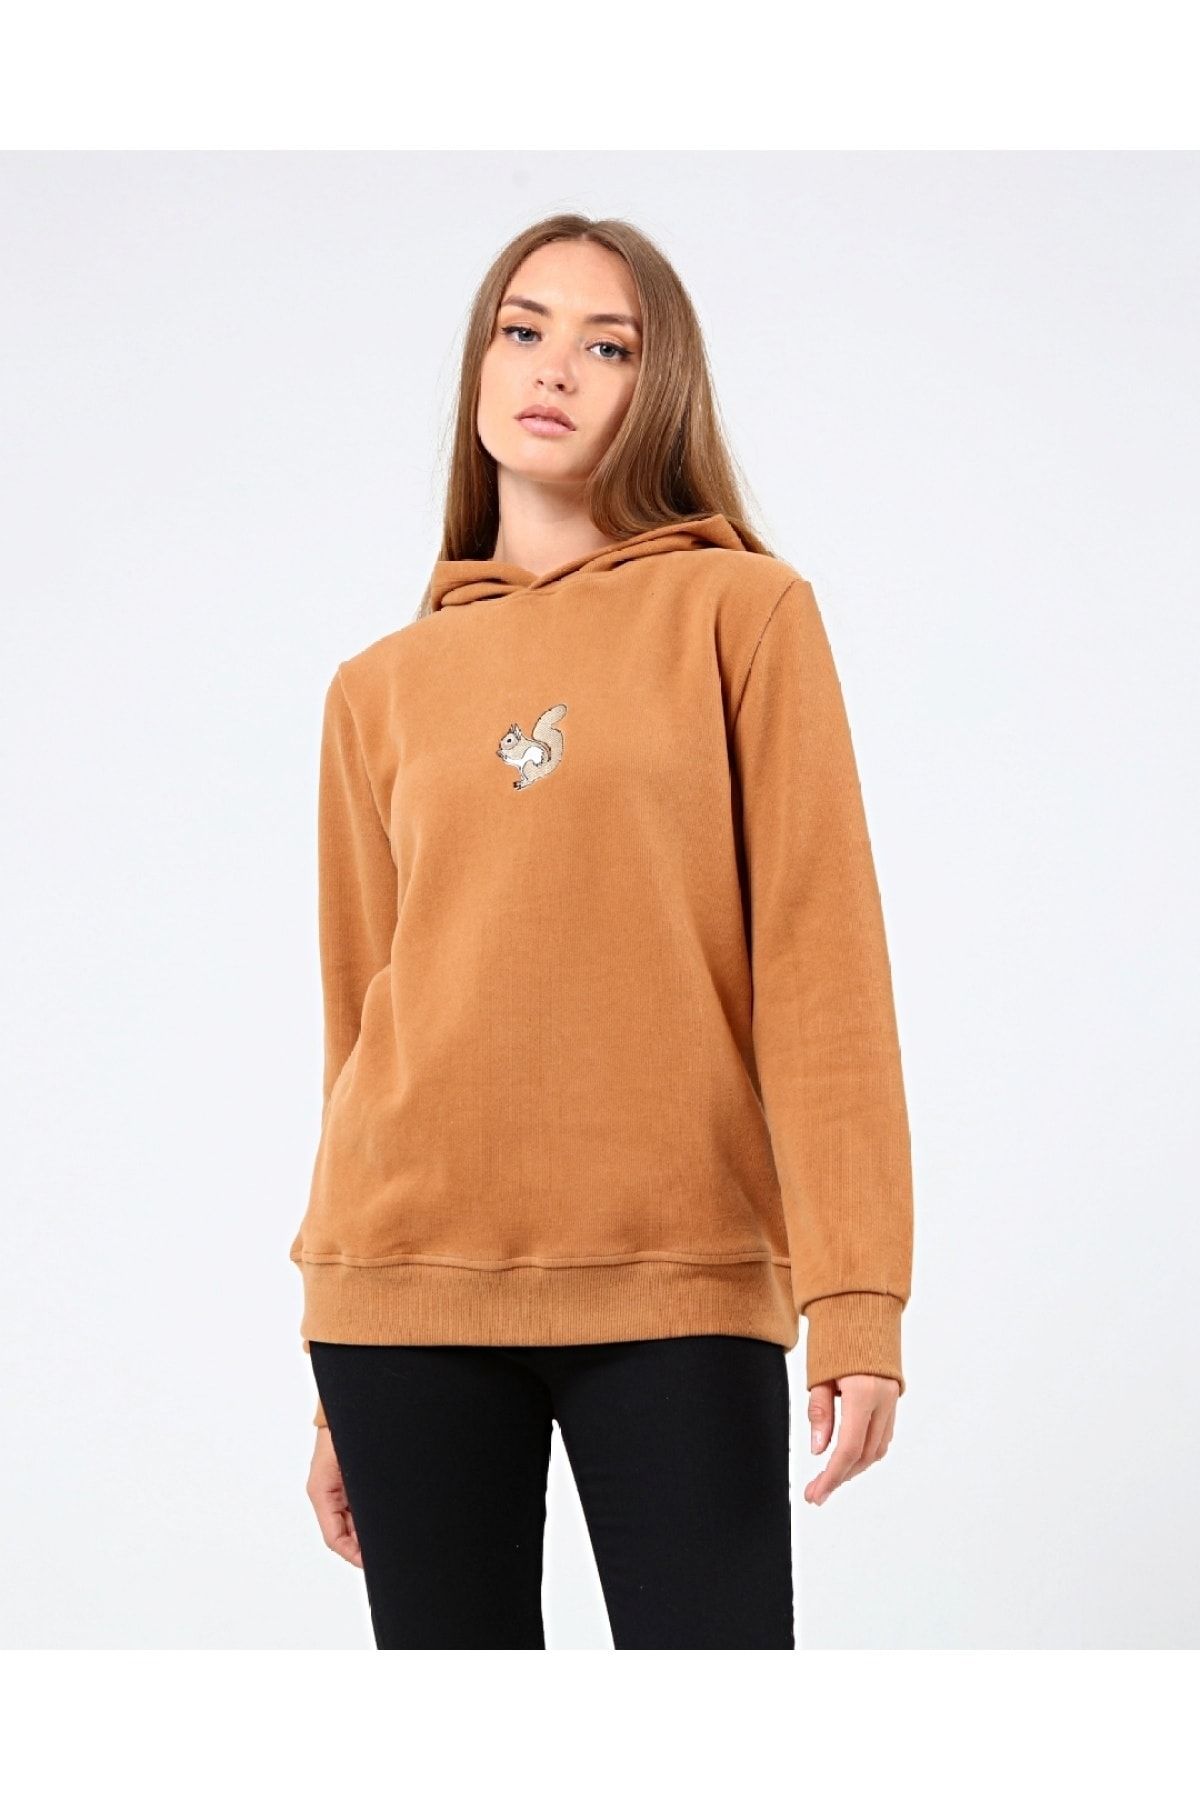 GENIUS STORE Store Kadın Selanik Outdoor Kapşonlu Sweatshirt Nakış Işlemeli Günlük Spor Sweatshirt